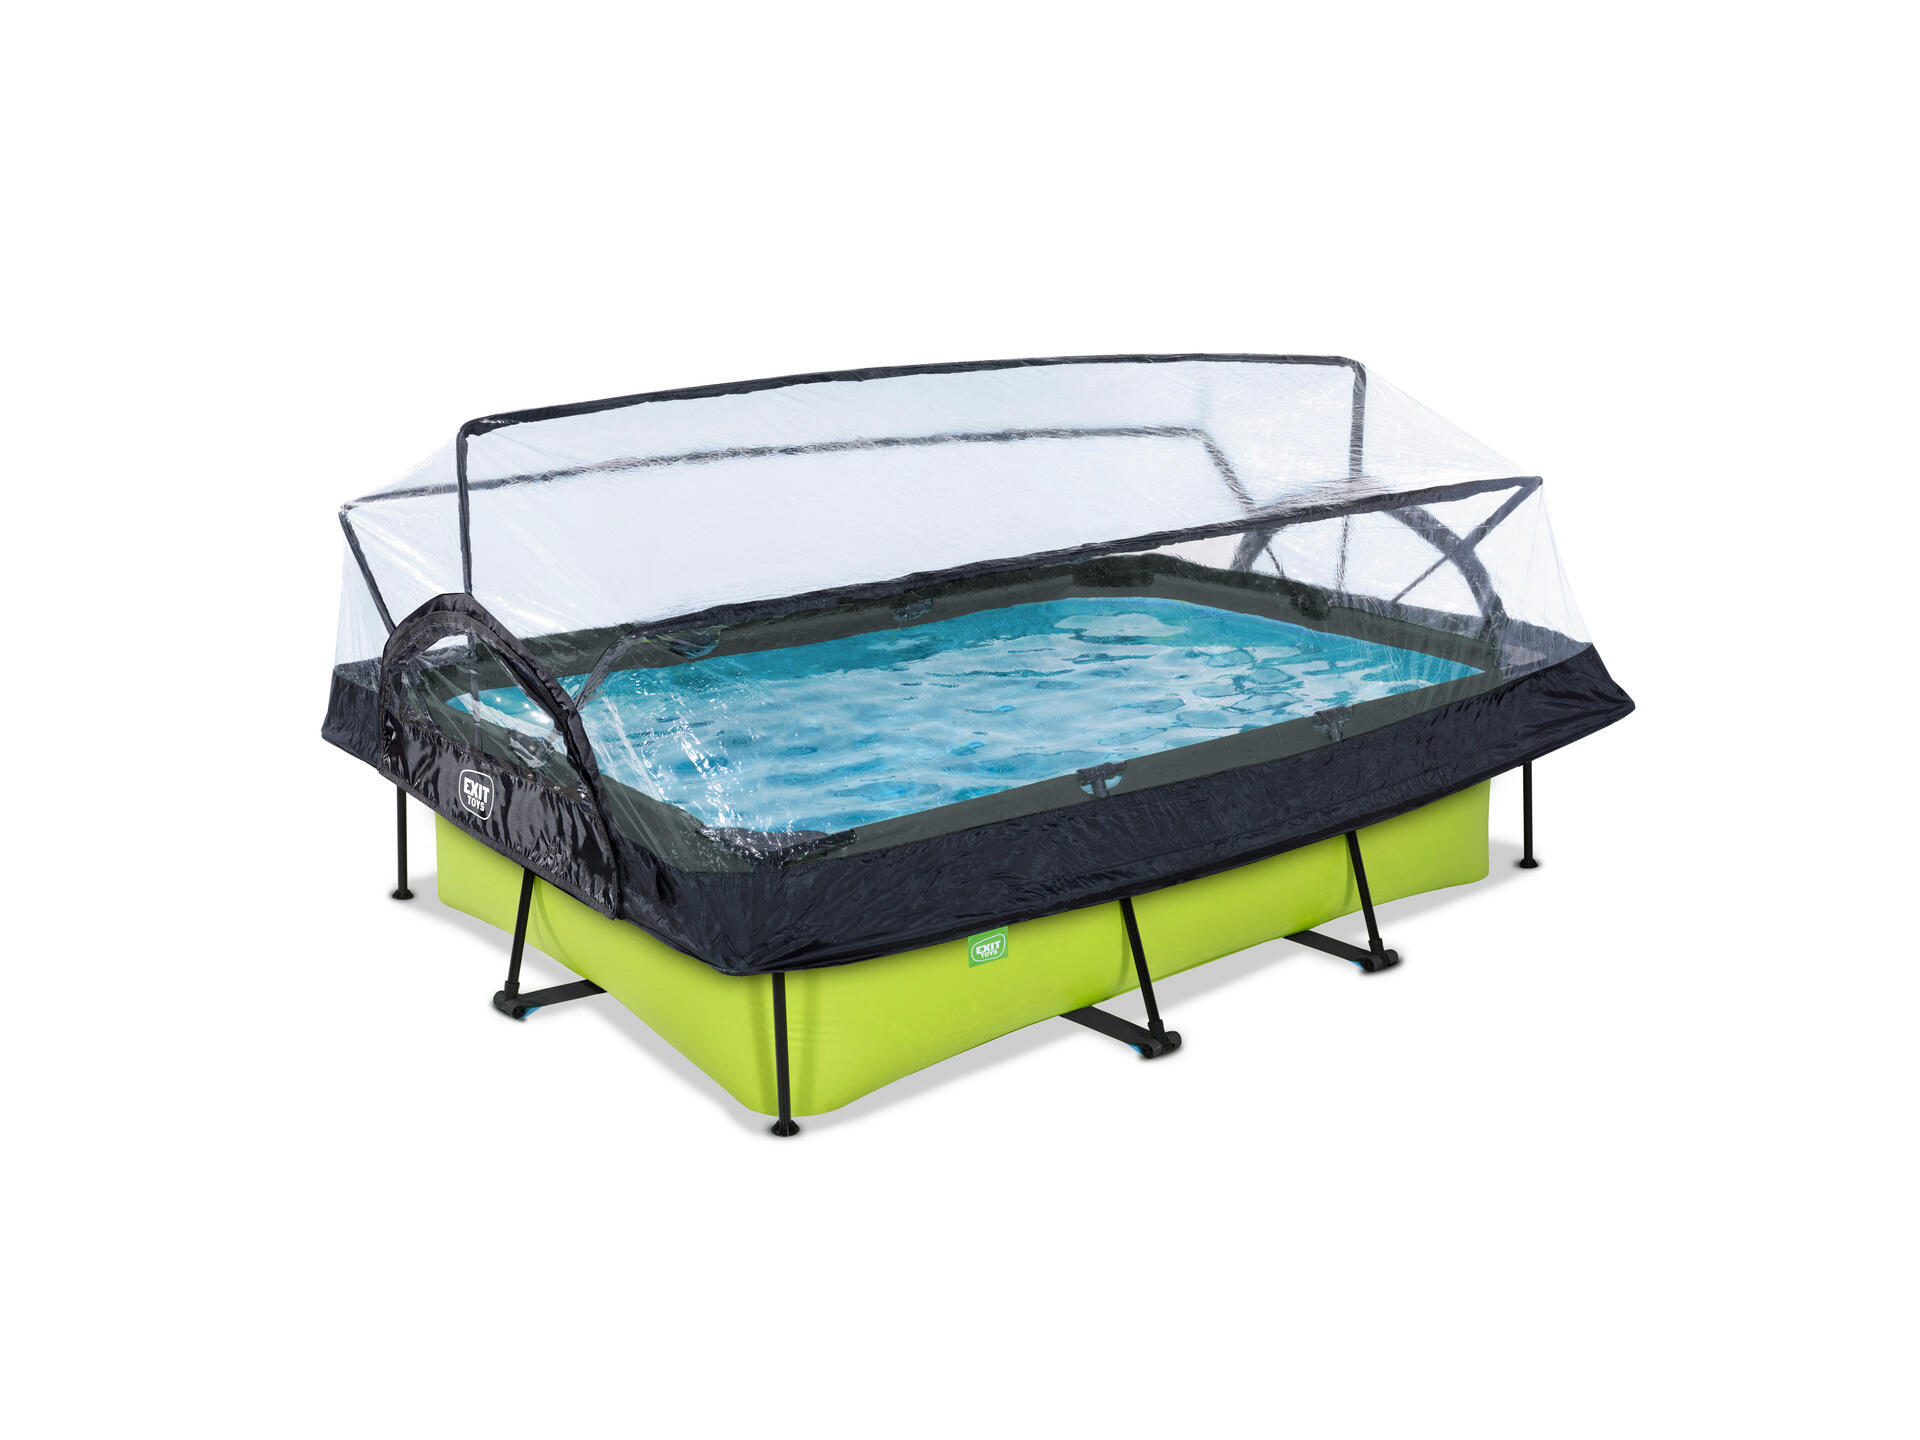 Exit Toys Lime piscine avec dôme 300x200x65 cm + pompe filtrante